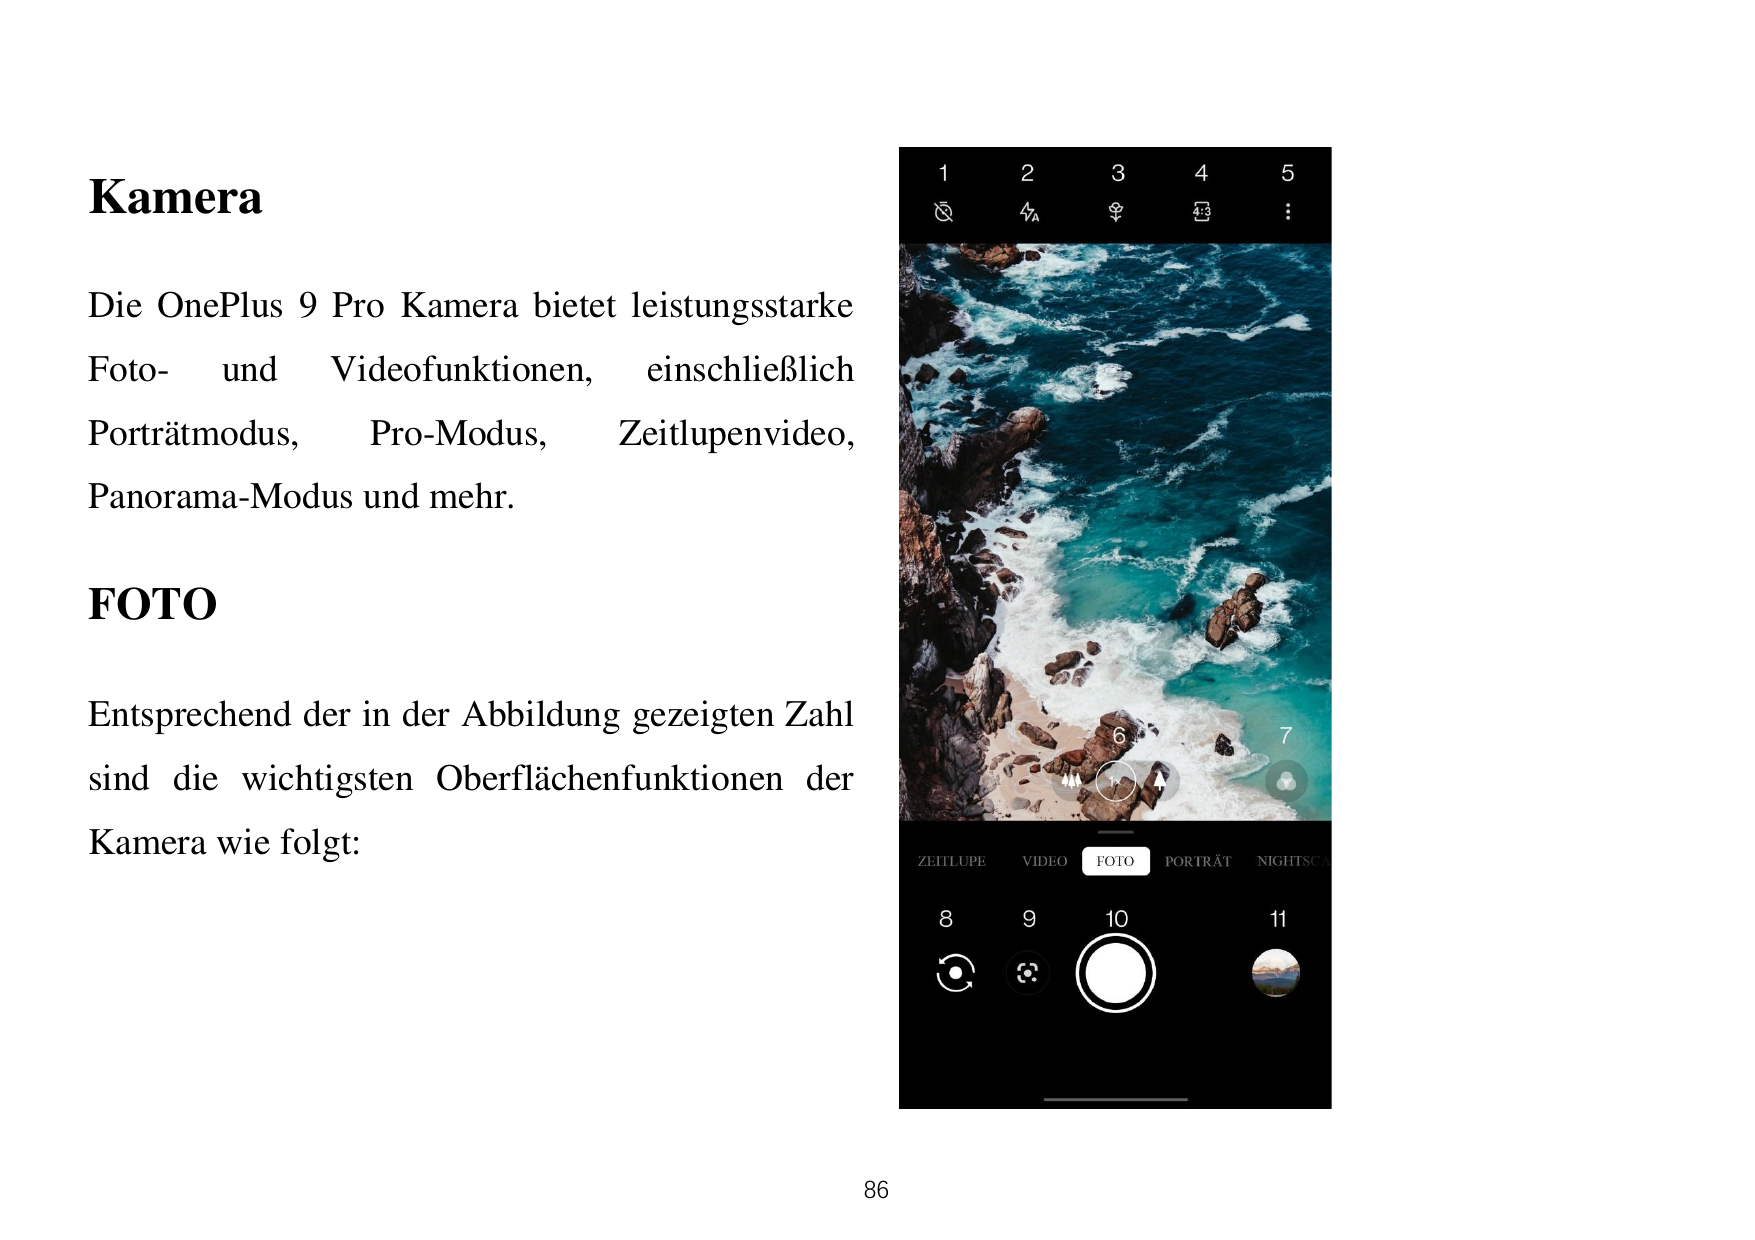 KameraDie OnePlus 9 Pro Kamera bietet leistungsstarkeFoto-undVideofunktionen,Porträtmodus,Pro-Modus,einschließlichZeitlupenvideo